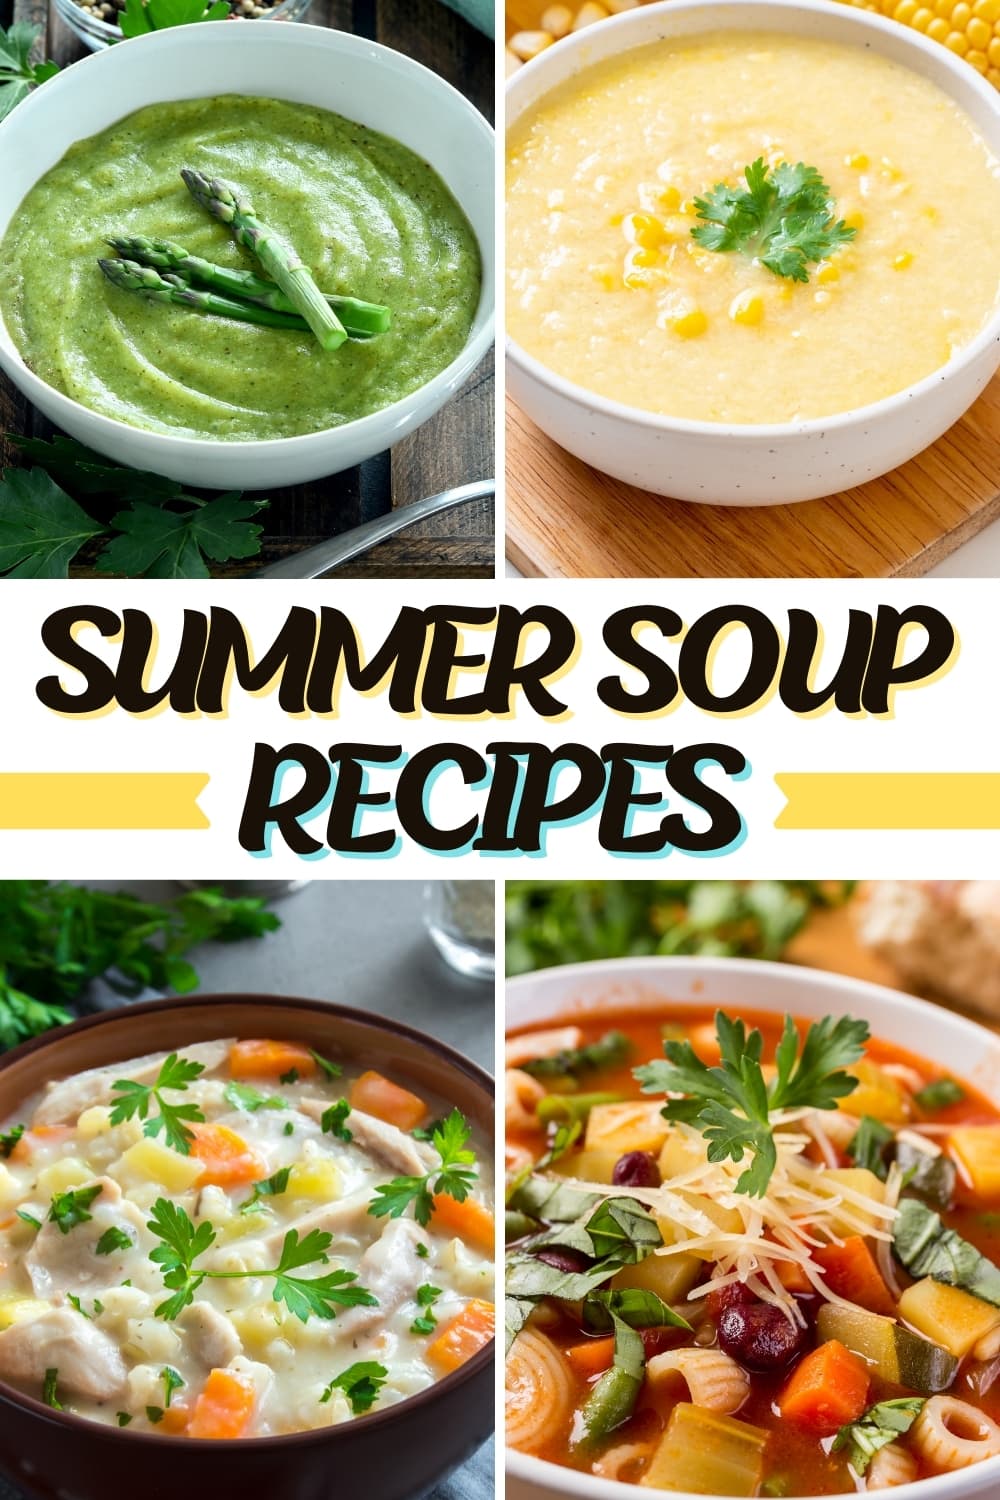 Summer Soup Recipes 1 